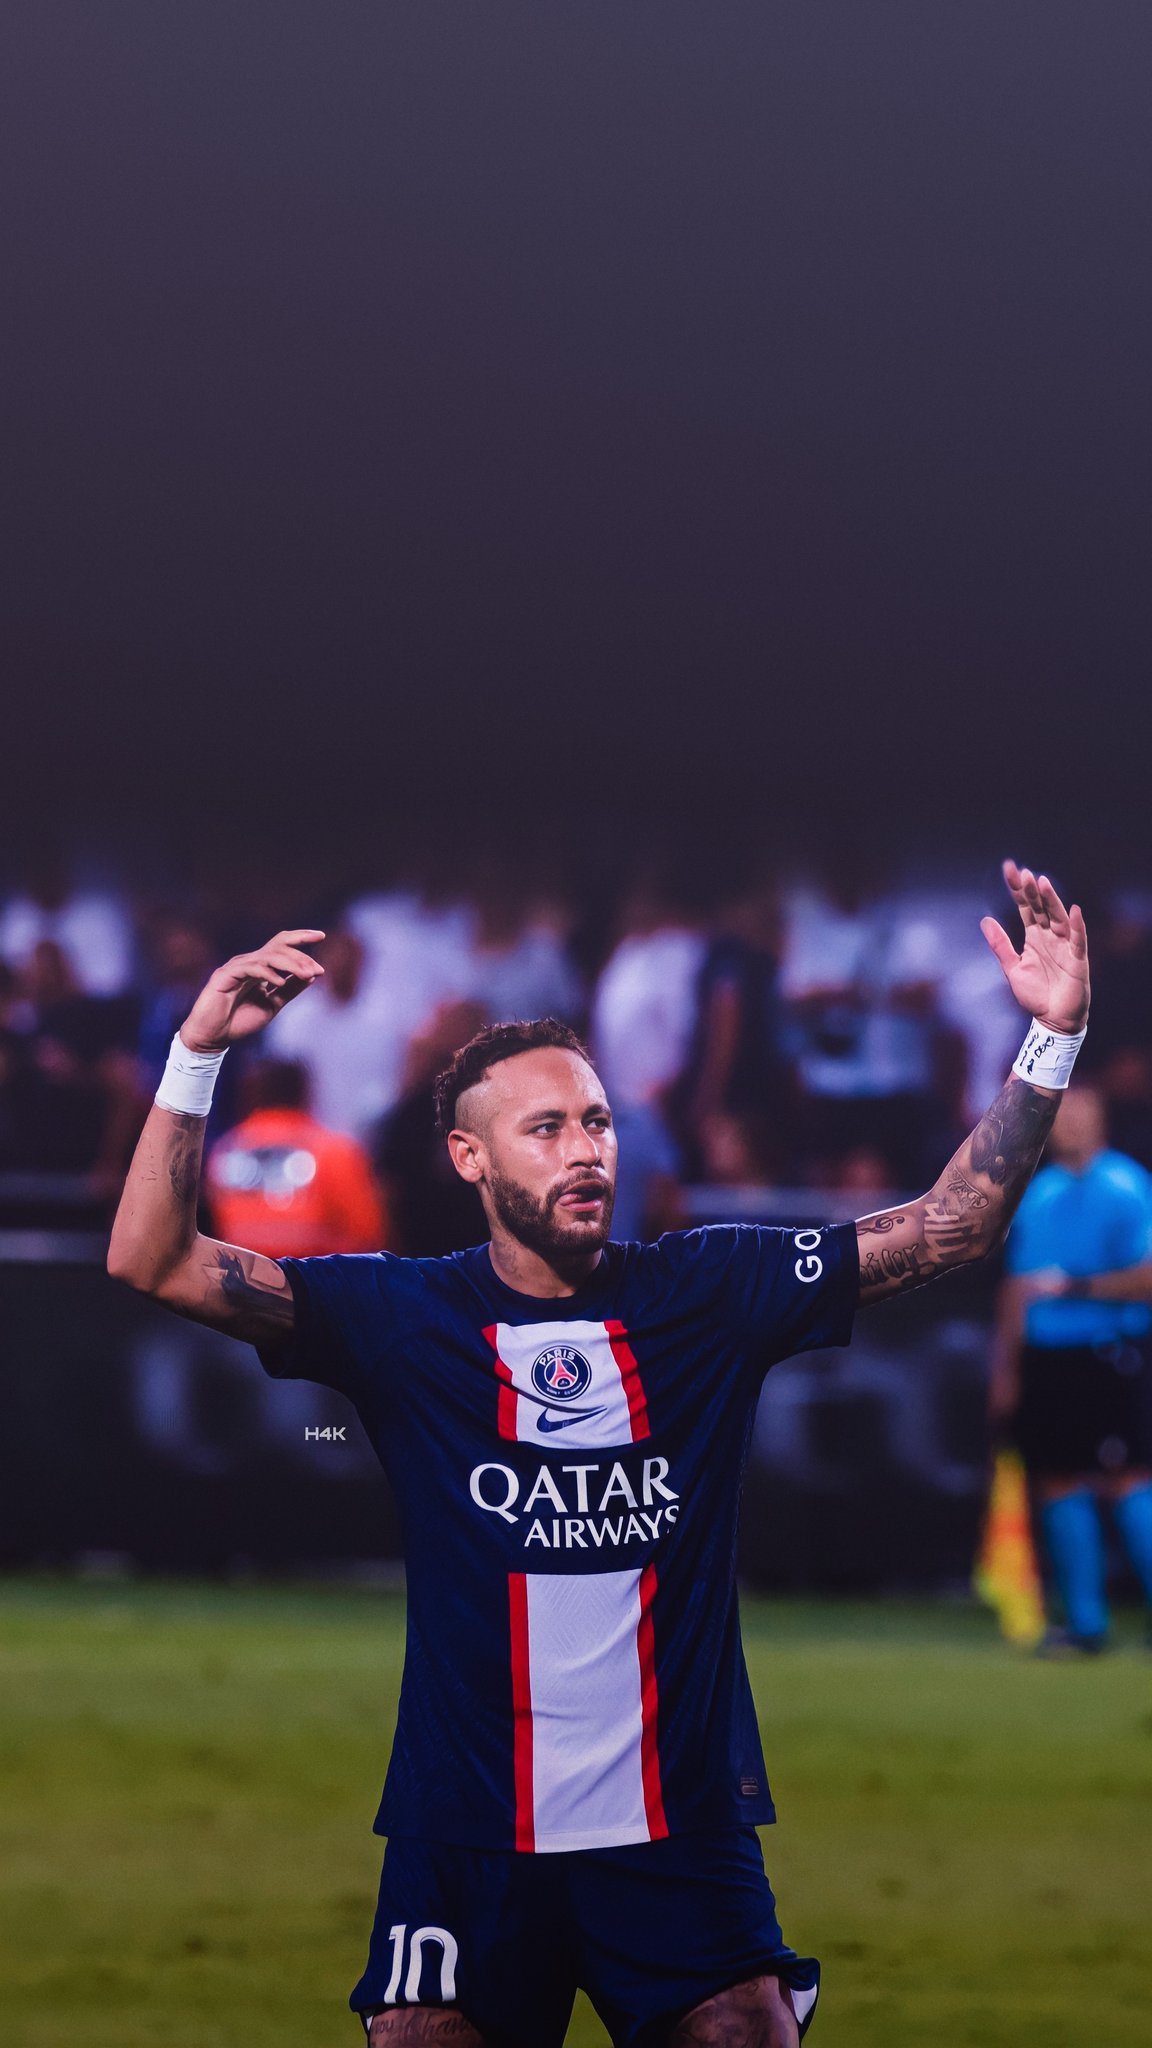 Neymar cartoon HD wallpapers | Pxfuel